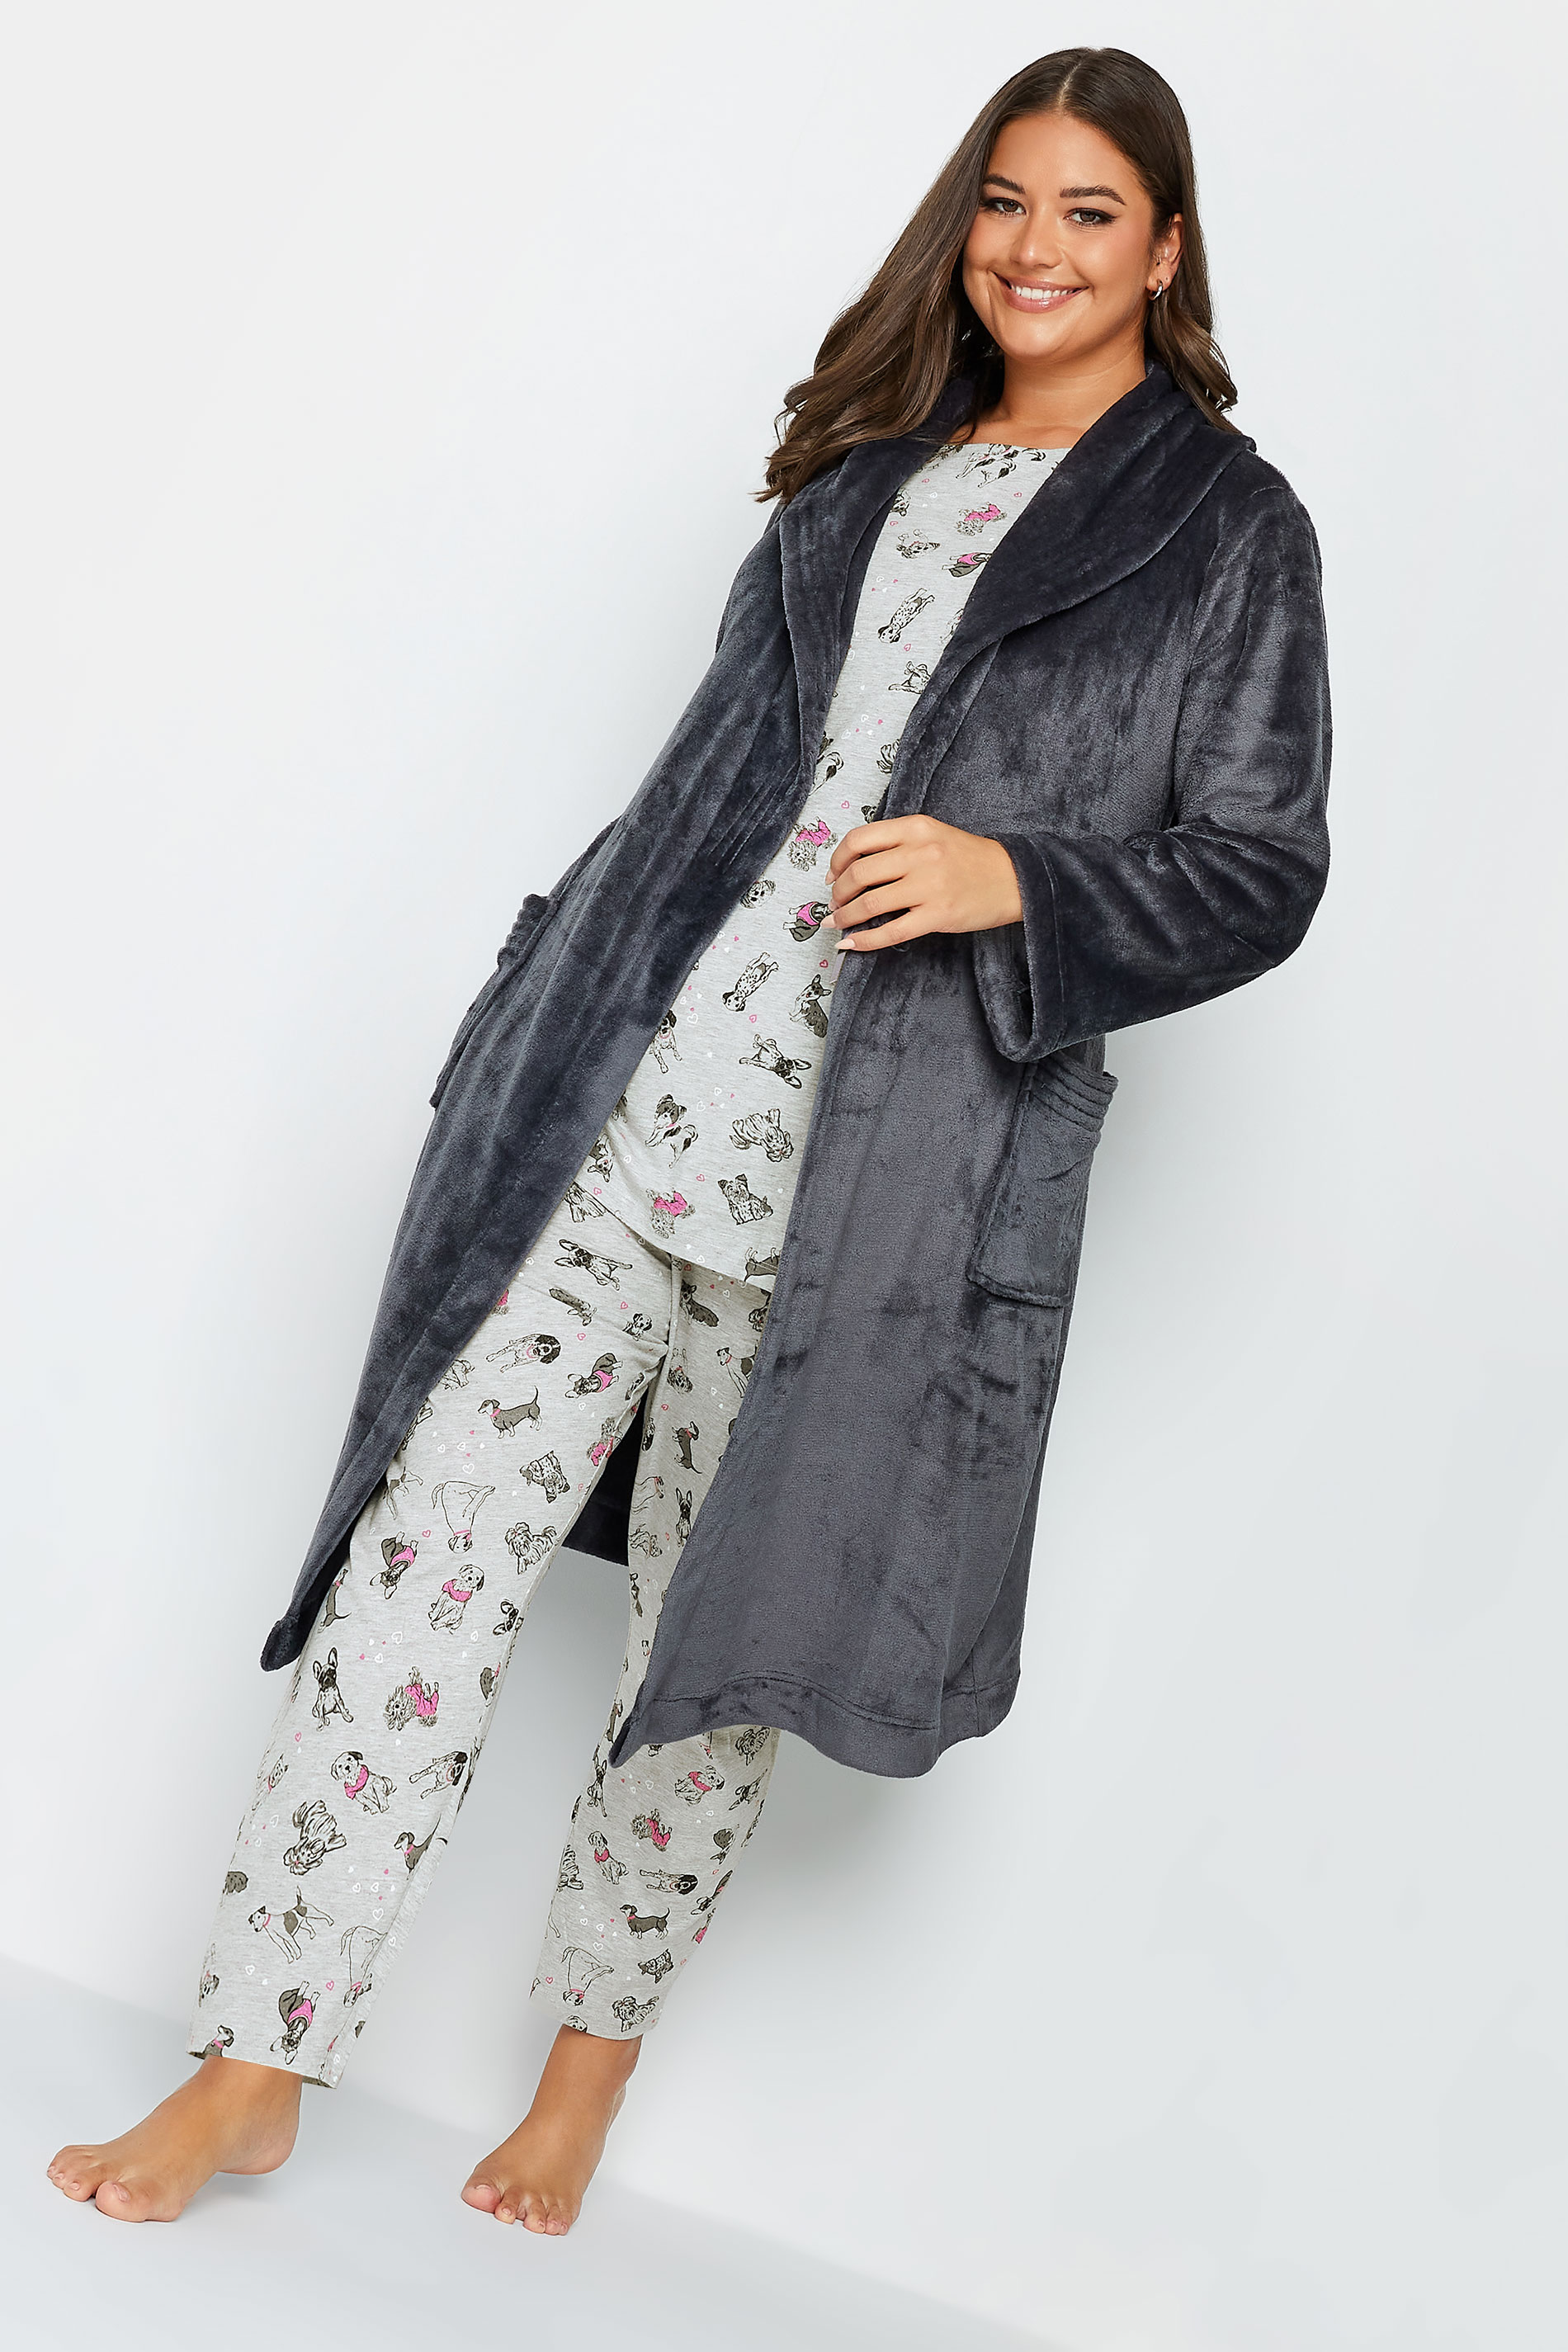 YOURS Plus Size Grey Dog Print Pyjama Set | Yours Clothing 3